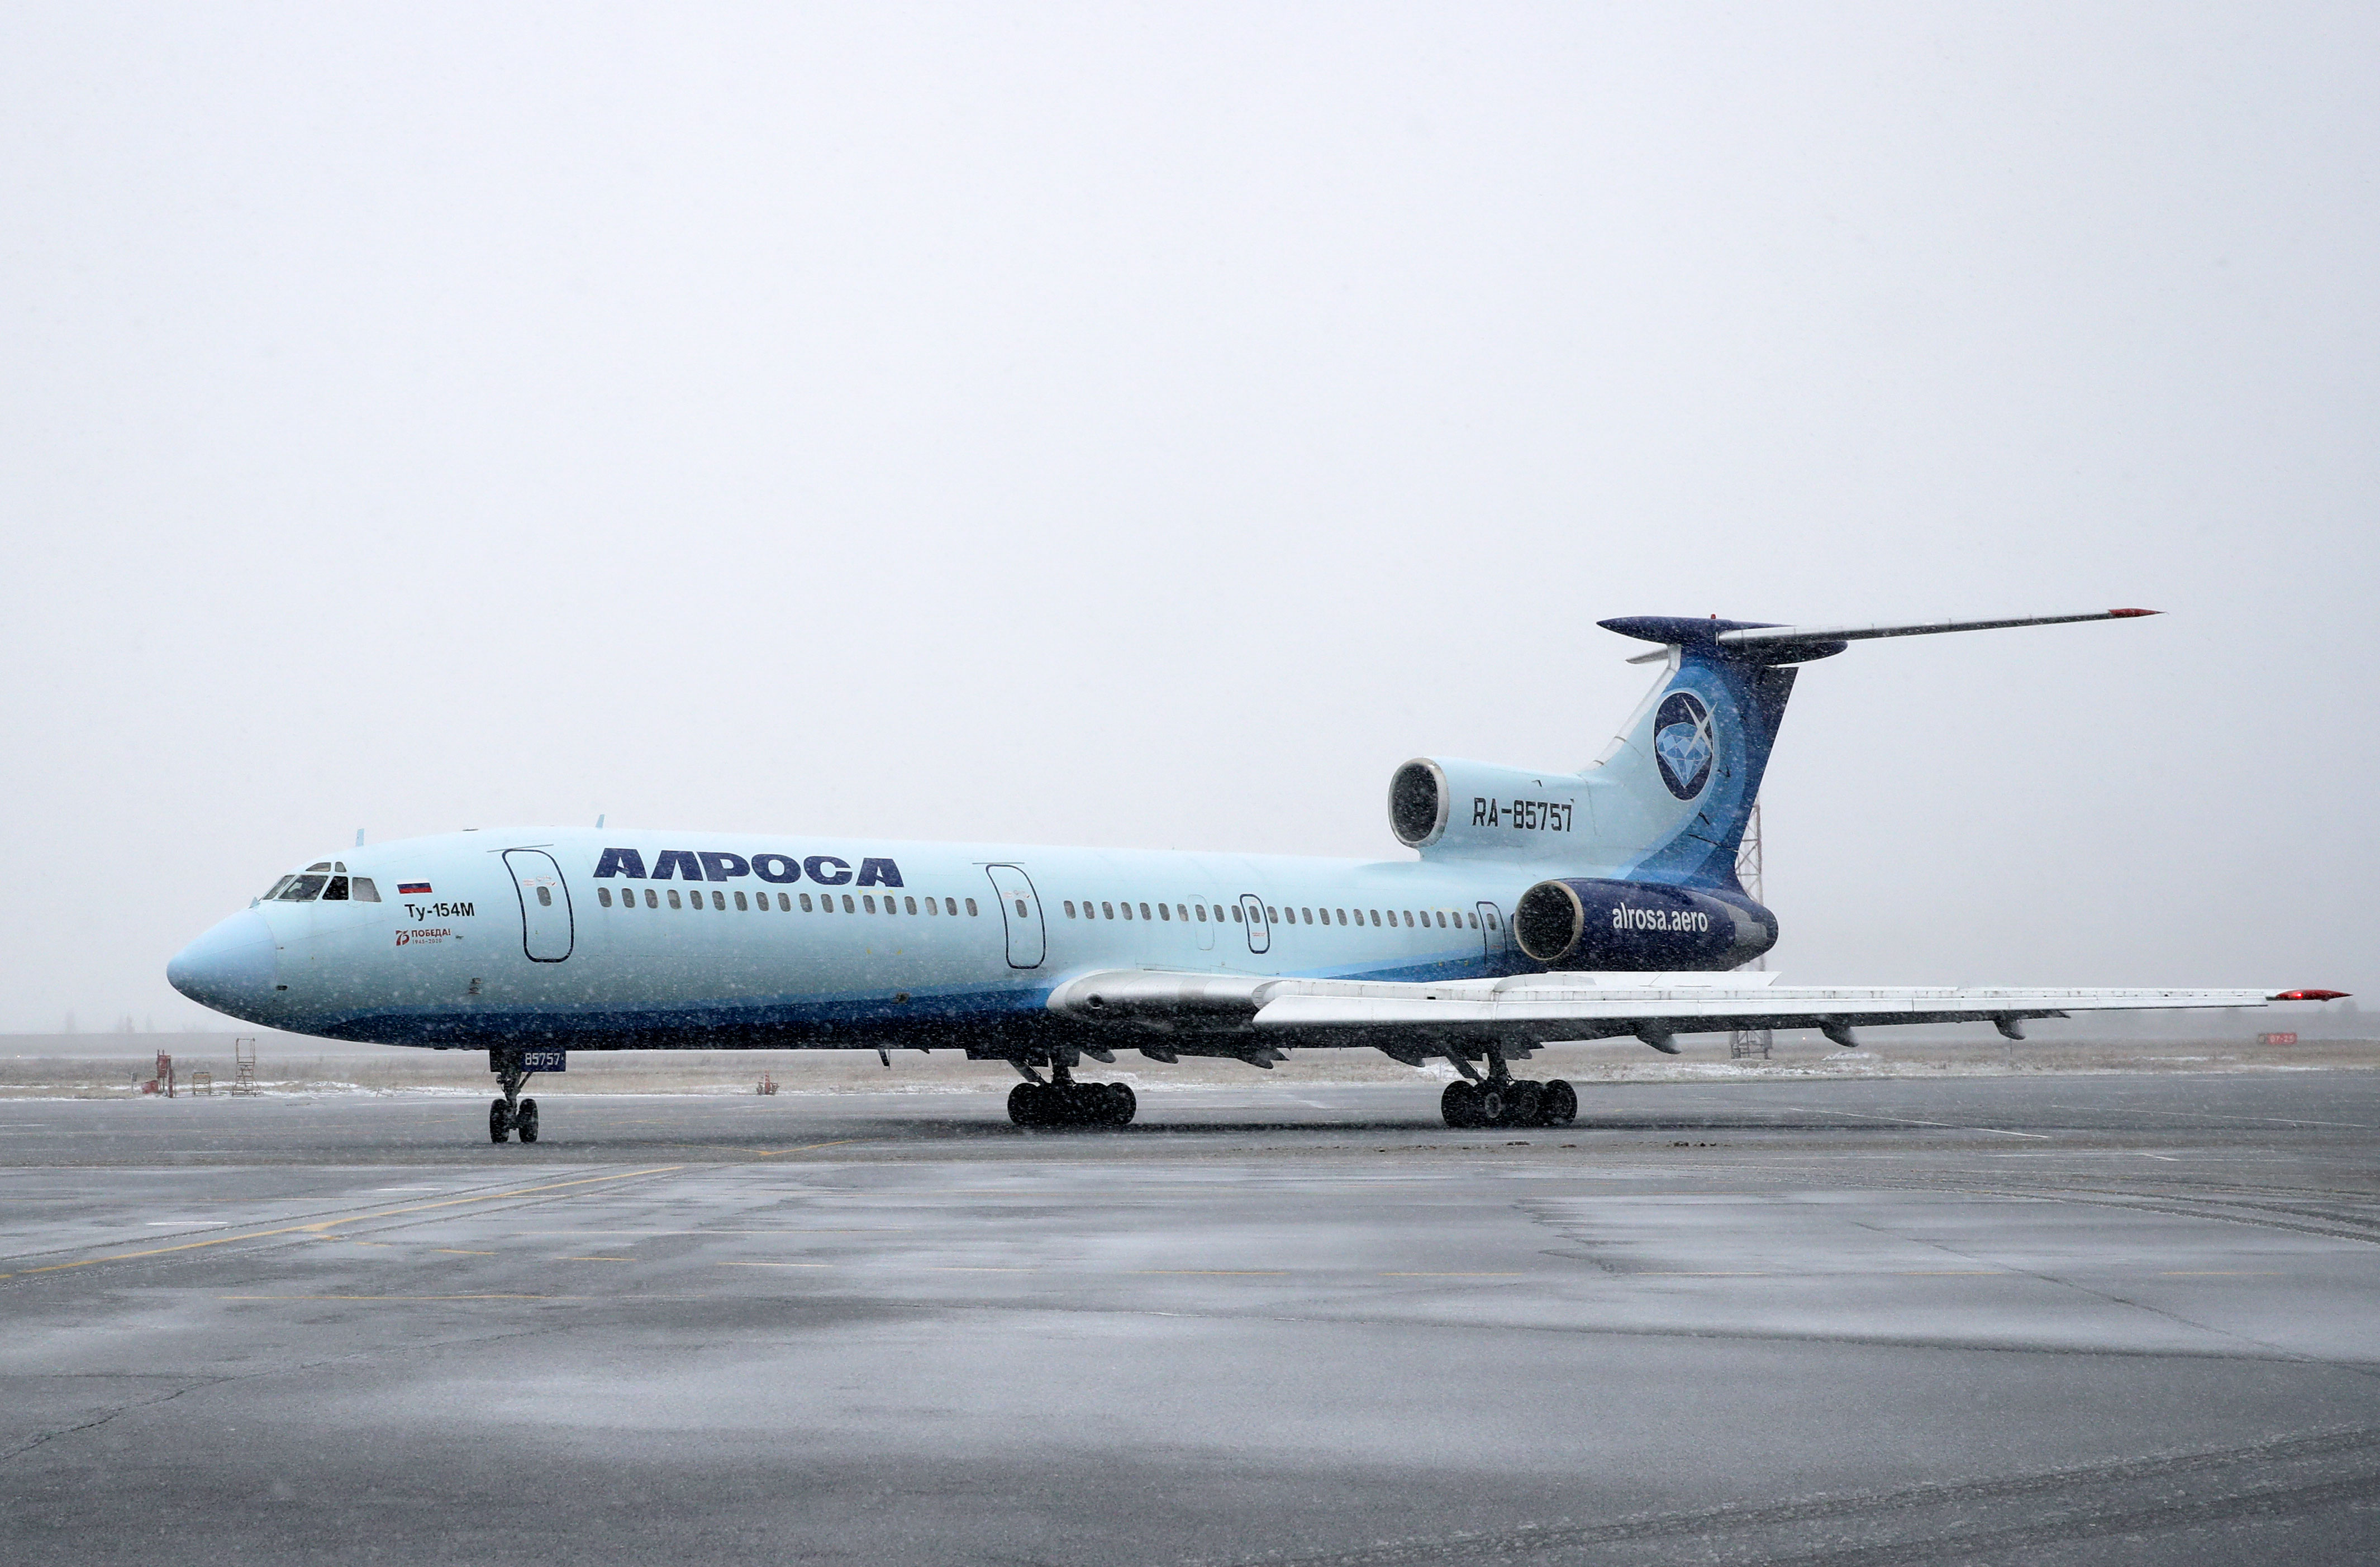 Последний гражданский пассажирский рейс Ту-154 выполнил 28 октября 2020 года. Последней эксплуатировавшей такие самолеты компанией оставалась &laquo;Алроса&raquo;. Эксплуатацию завершили в связи с истечением срока сертификата летной годности. Самолет, выполнивший рейс из Мирного в Якутии в Новосибирск, был собран в 1992 году.

Самолеты Ту-154 еще есть у Минобороны, а также у КНДР. Год назад последний коммерческий рейс совершил его предшественник&nbsp;&mdash; самолет Ту-134. Пилоты, когда говорили об этих самолетах, часто называли Ту-154 &laquo;Туполем&raquo;, а Ту-134&nbsp;&mdash; &laquo;Туполёнком&raquo;